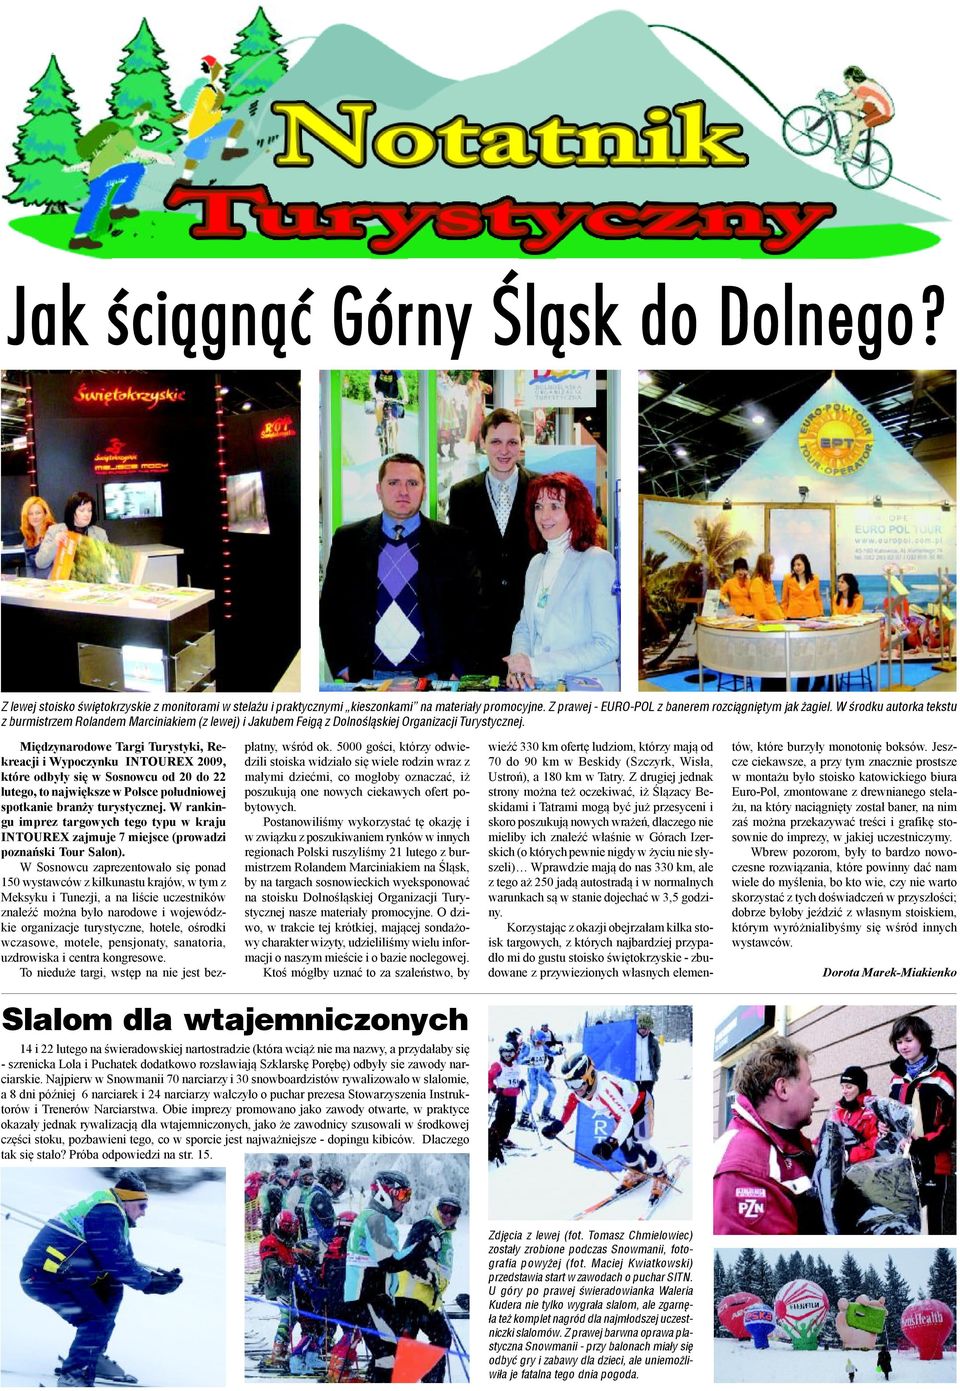 Międzynarodowe Targi Turystyki, Rekreacji i Wypoczynku INTOUREX 2009, które odbyły się w Sosnowcu od 20 do 22 lutego, to największe w Polsce południowej spotkanie branży turystycznej.